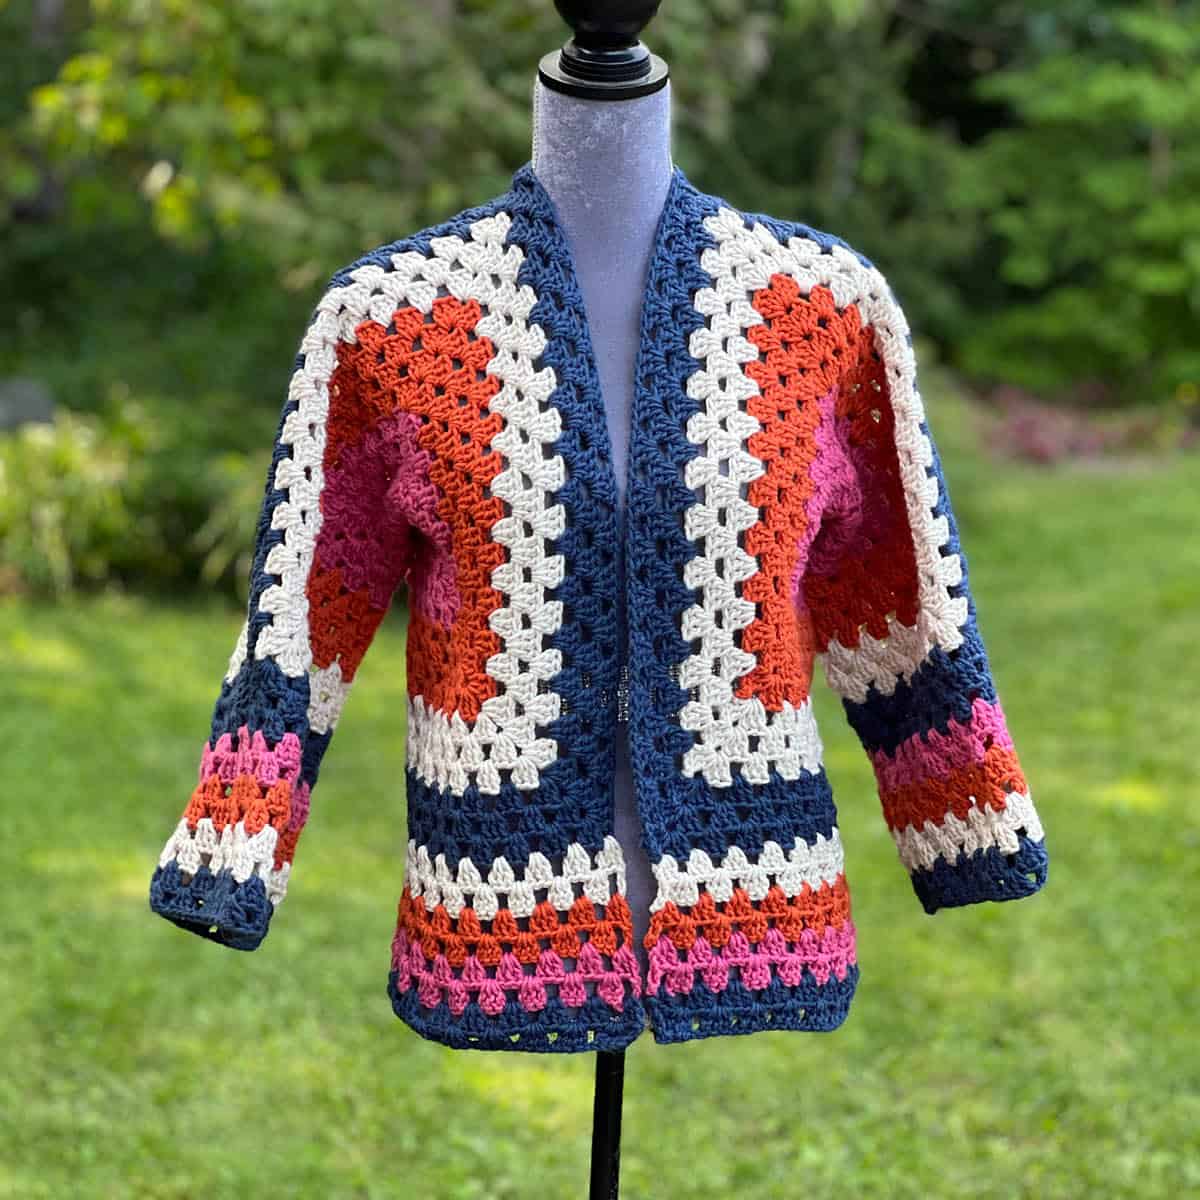 Optional Crochet Hexagon Cardi Jacket